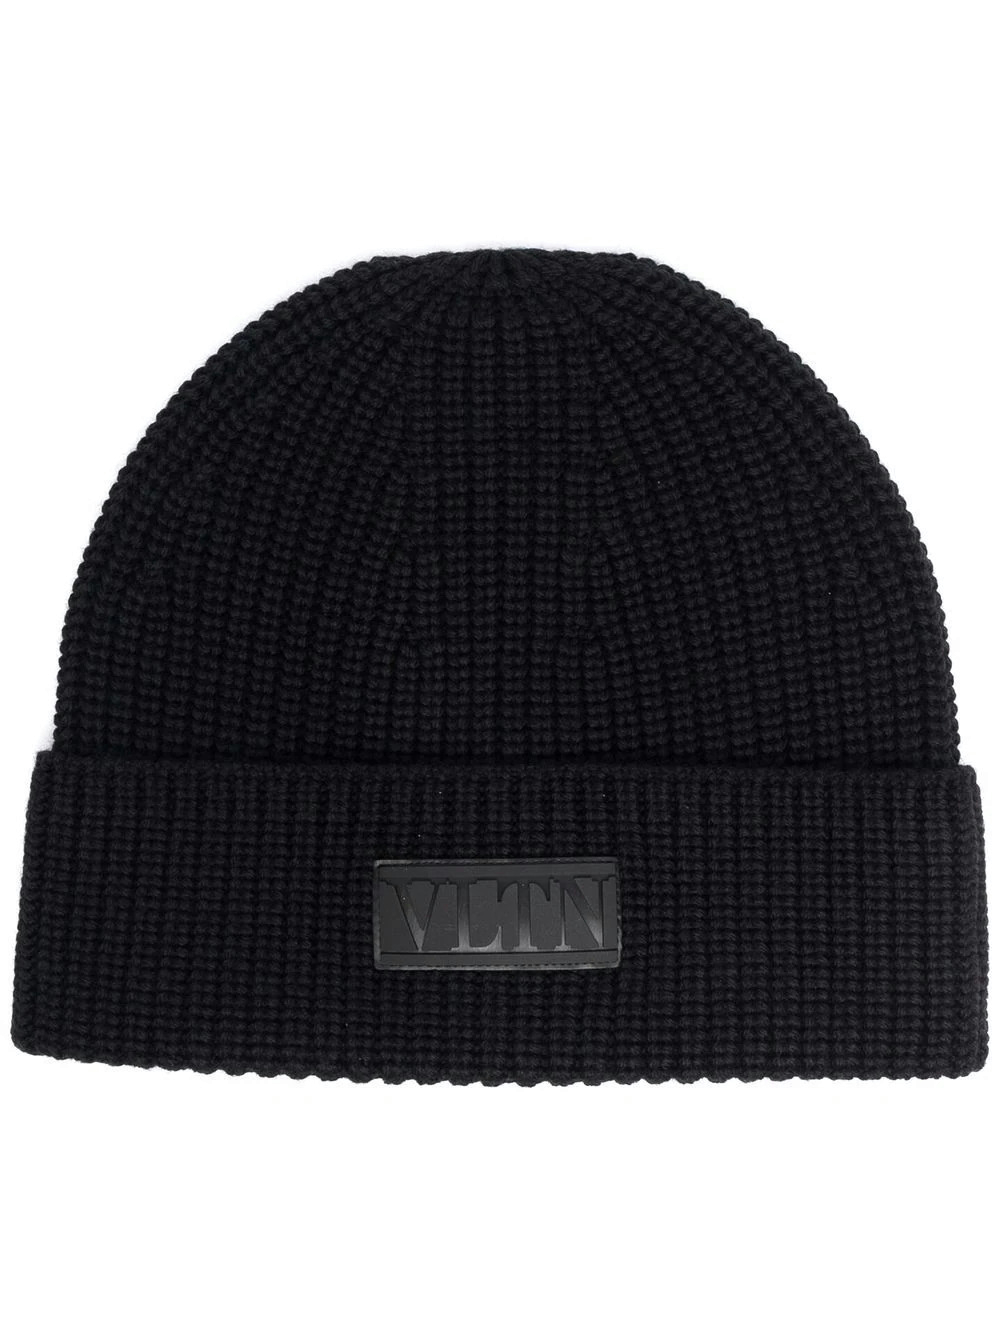 Valentino - VLTN ribbed-knit beanie hat